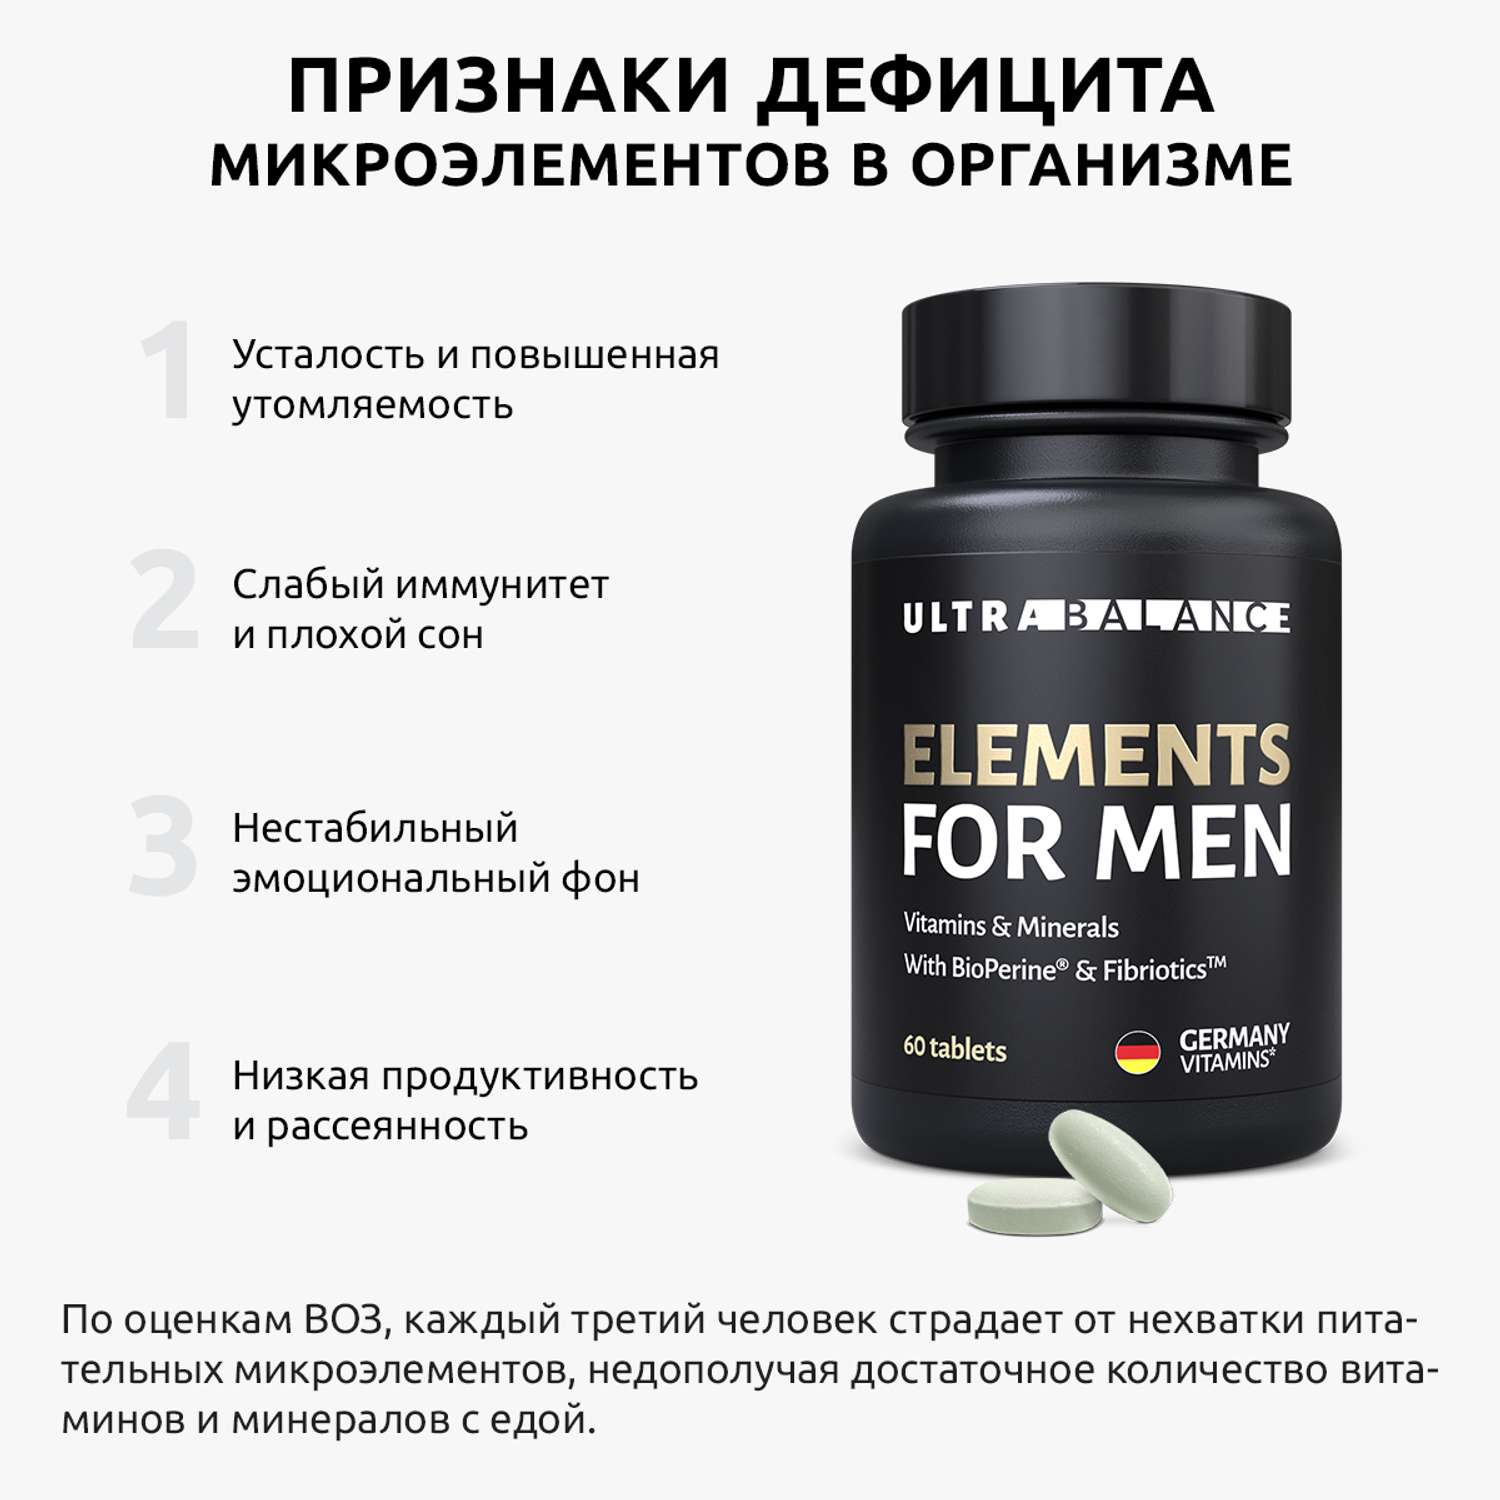 Витамины и минералы для мужчин UltraBalance Elements for men Omega 3 премиум - фото 11